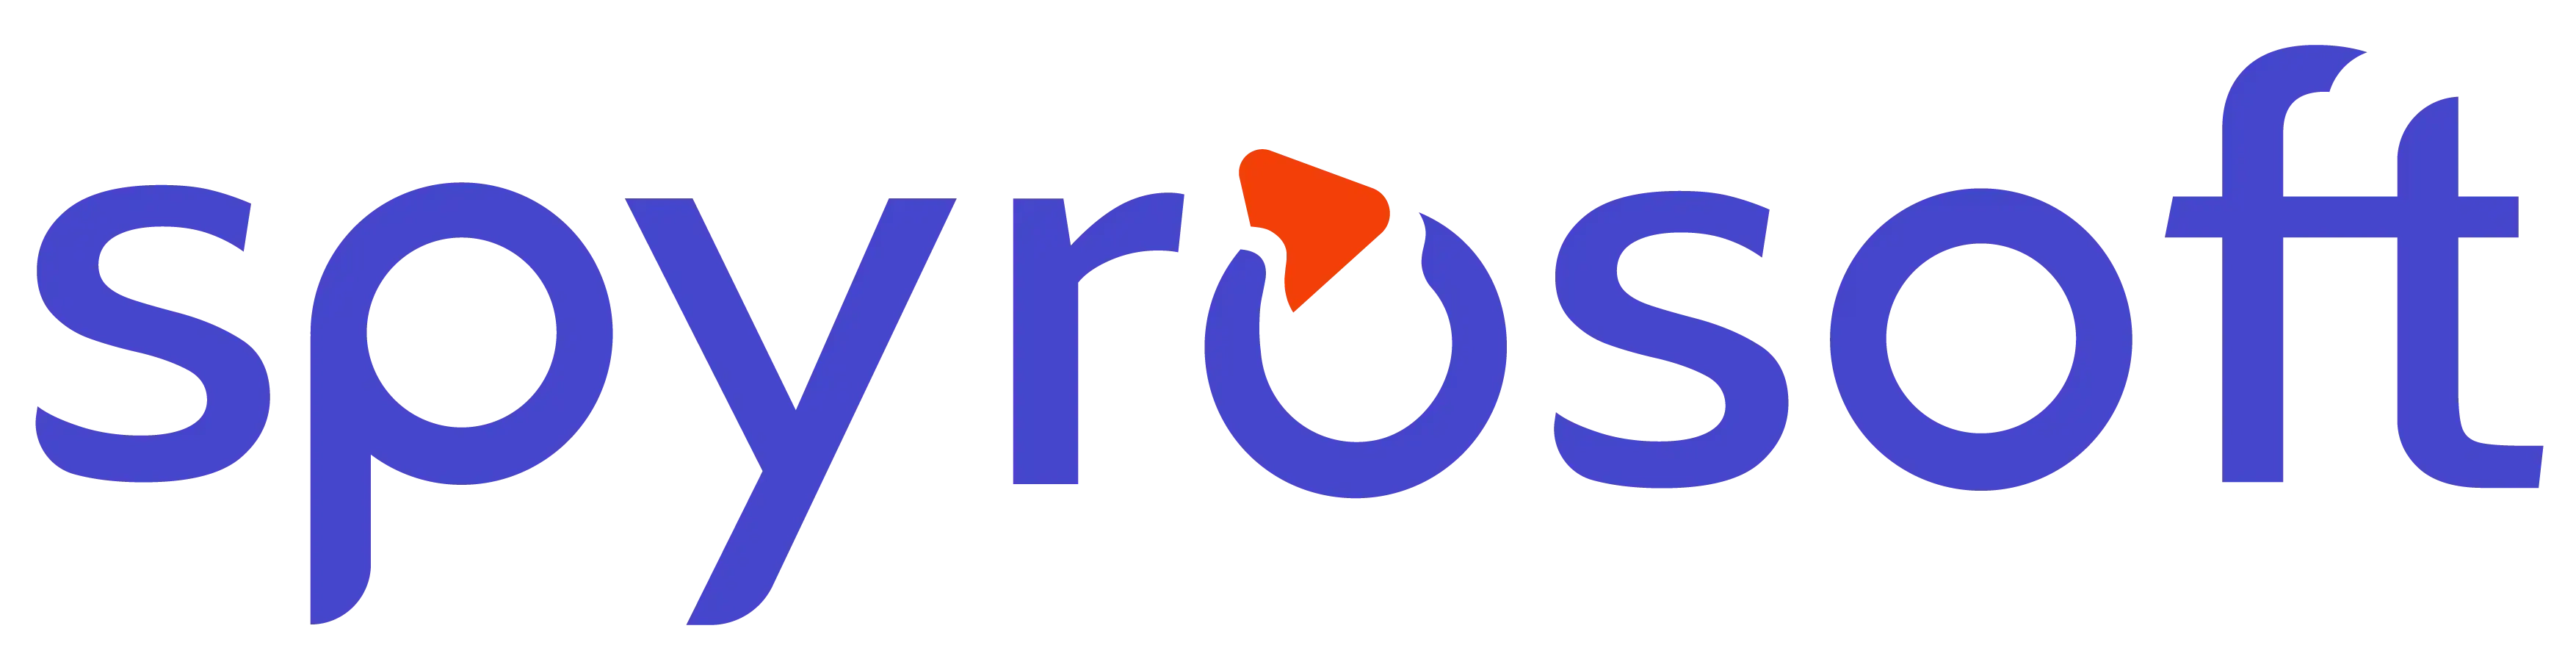 spyrosoft logo